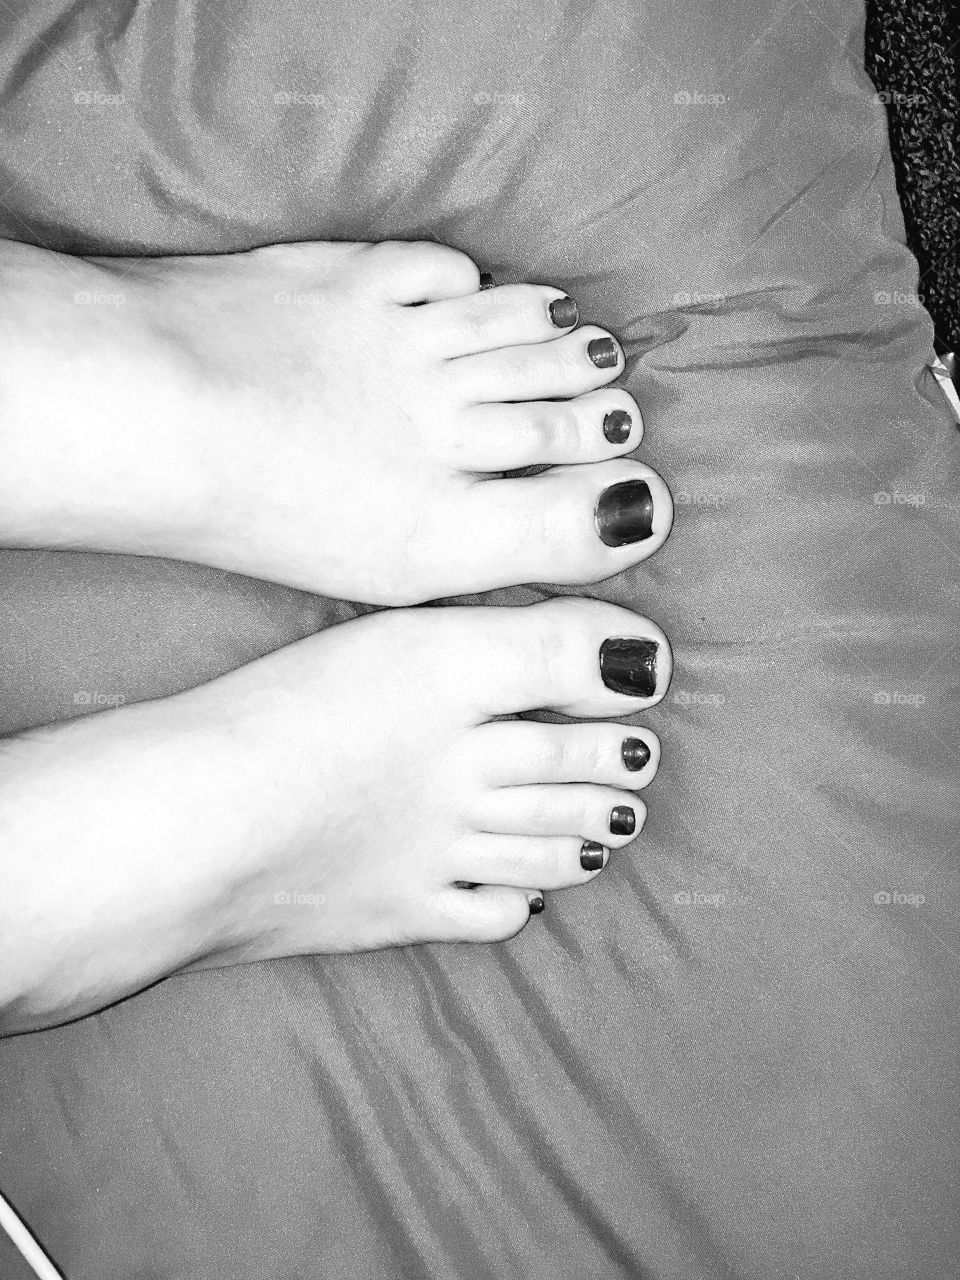 petite feet 